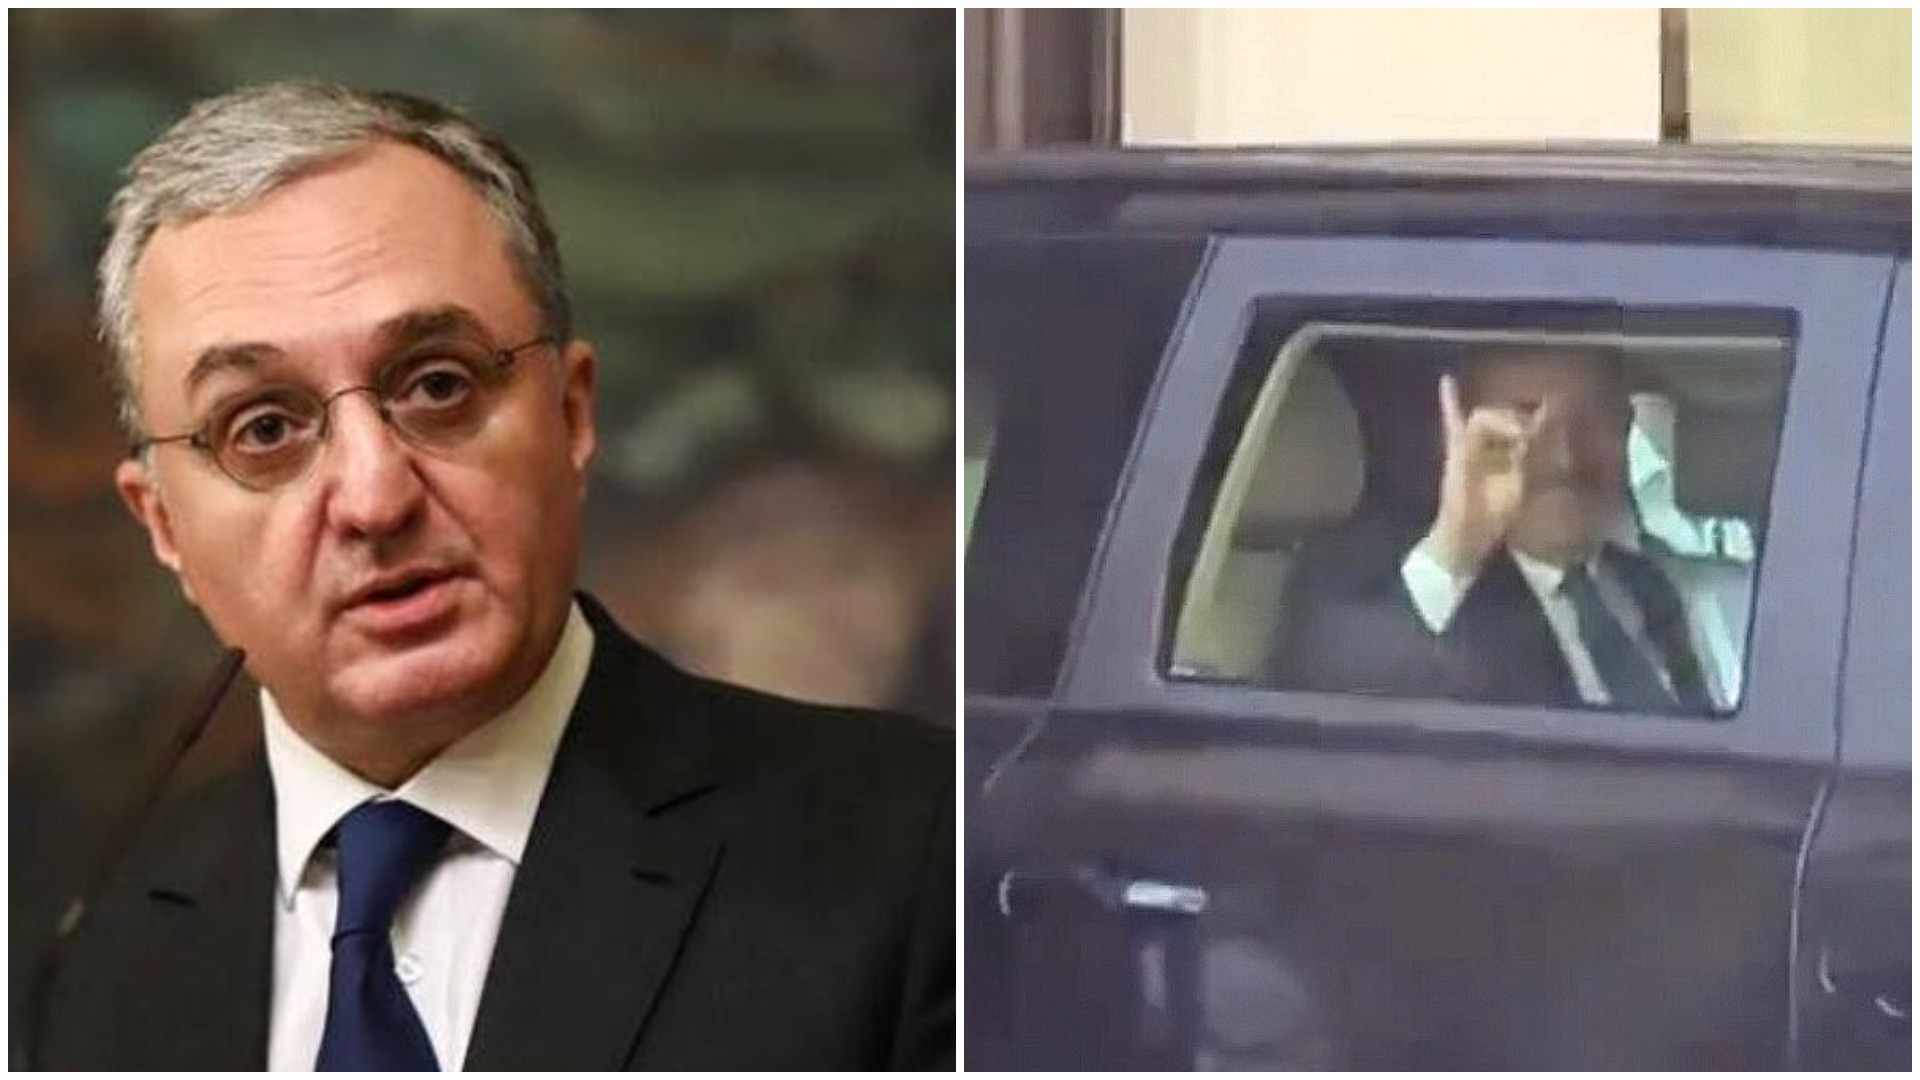 Ermenistan’ın eski dışişleri bakanı’ndan Çavuşoğlu'nun “bozkurt” işaretine tepki: "Hitler mezardan cevap selamını gönderiyor"